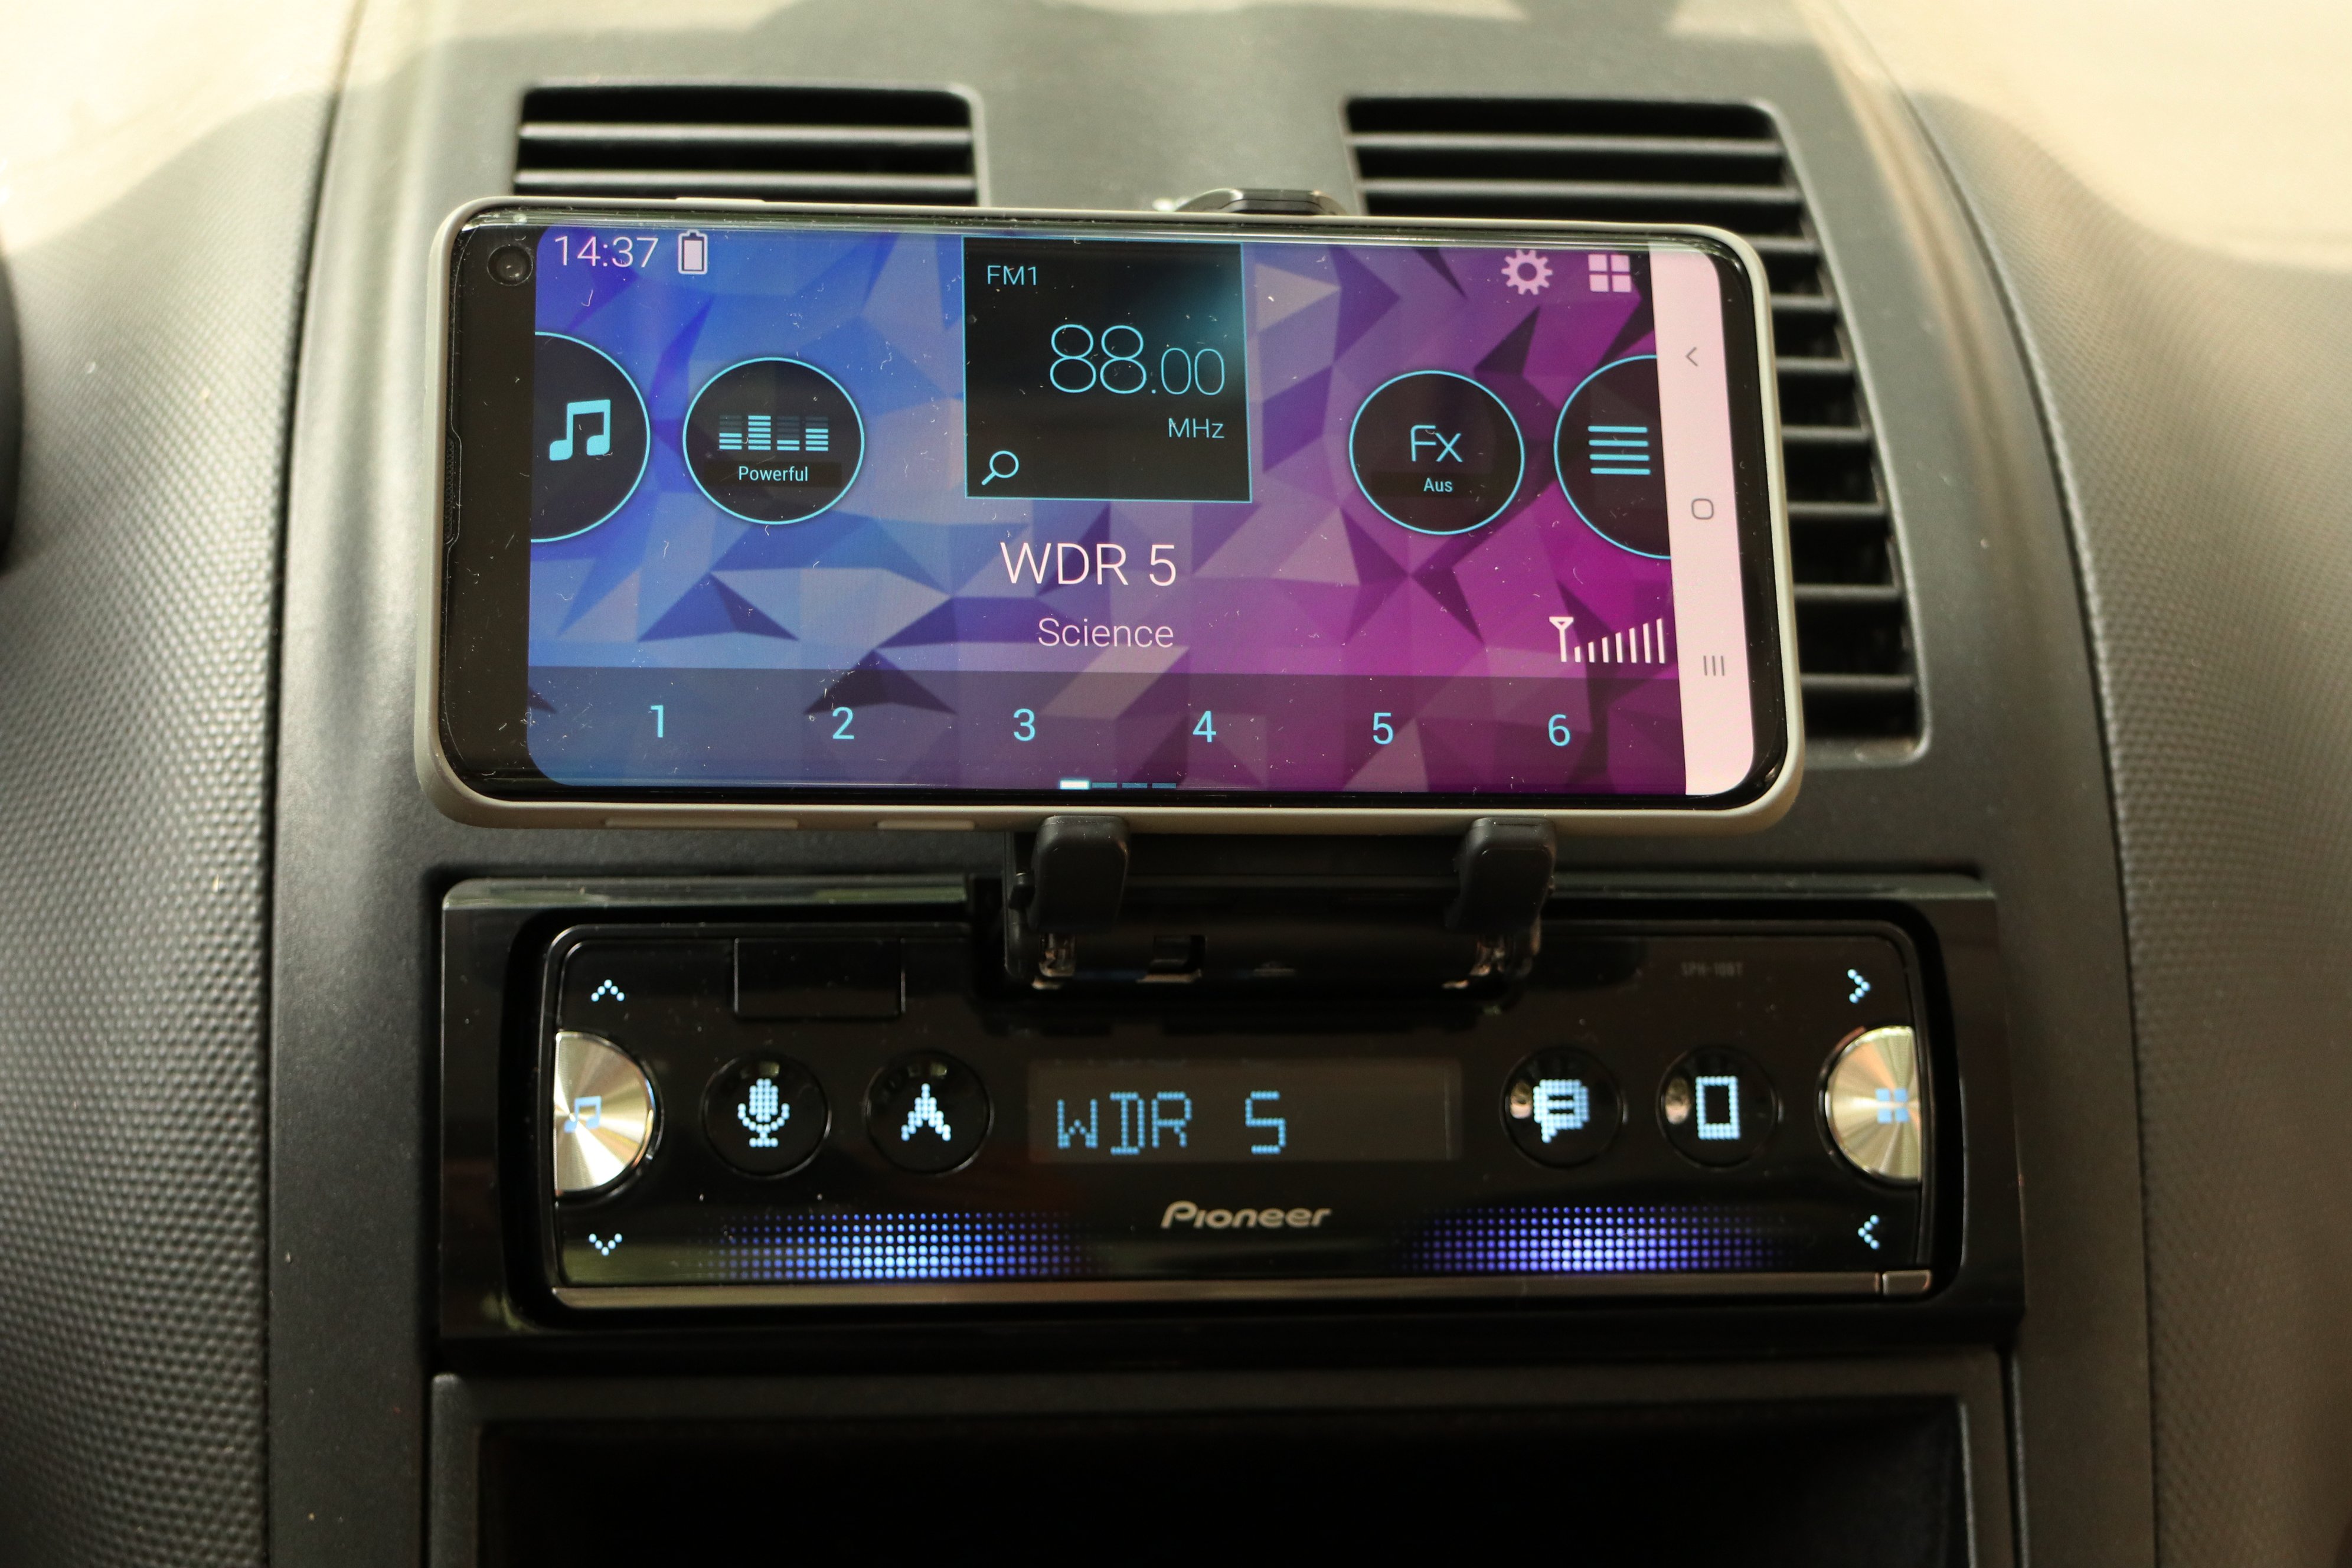 Connected Carssmartphon: Das Smartphone wird immer mehr zur Auto-Fernbedienung  - WELT